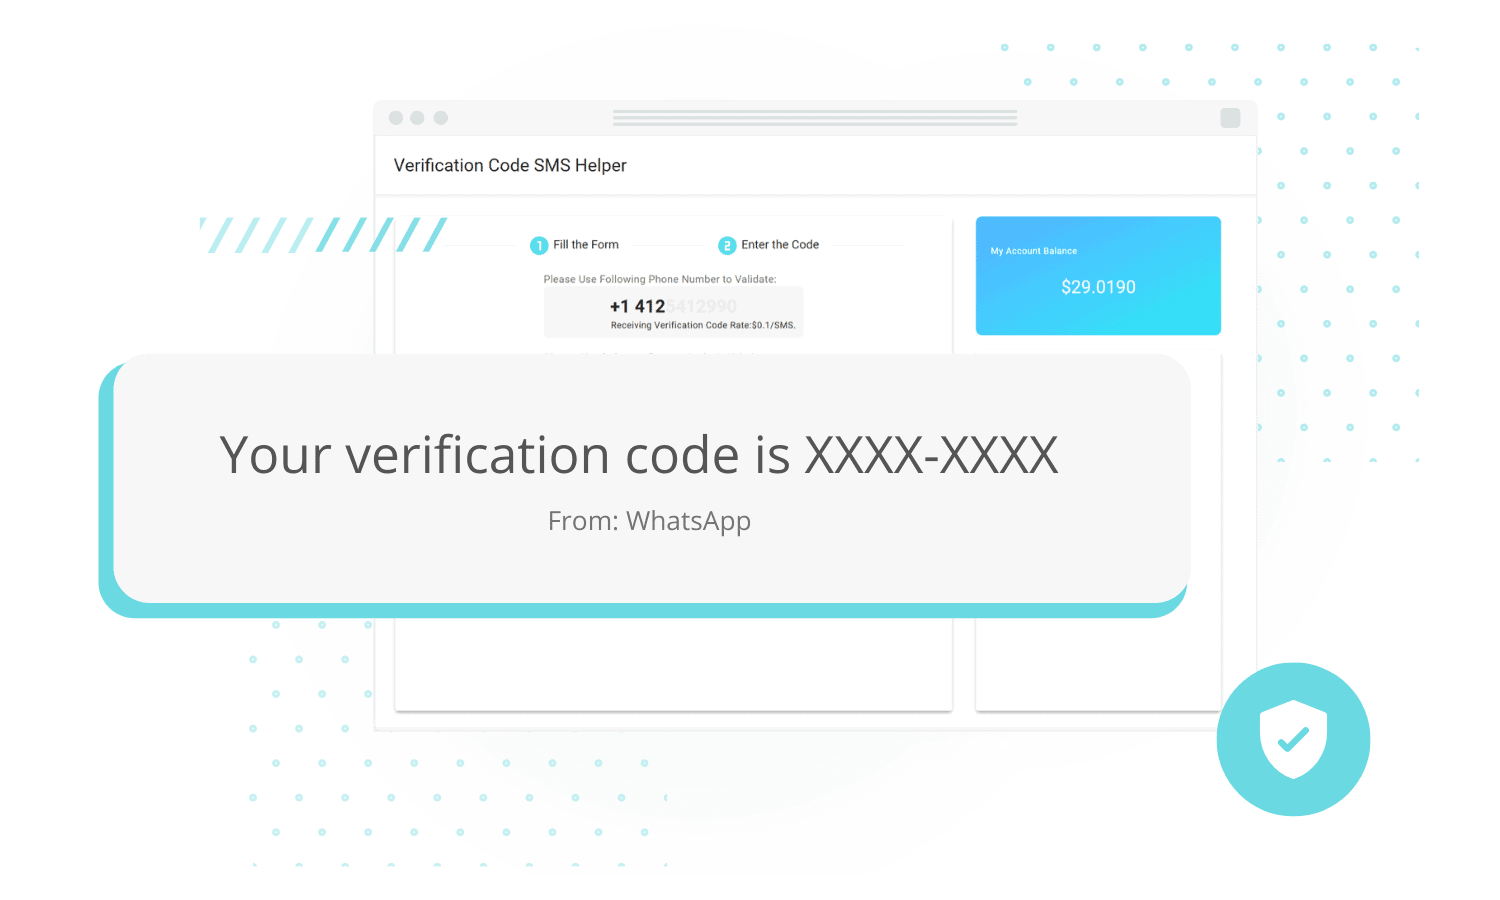 verificationcode receivedsms